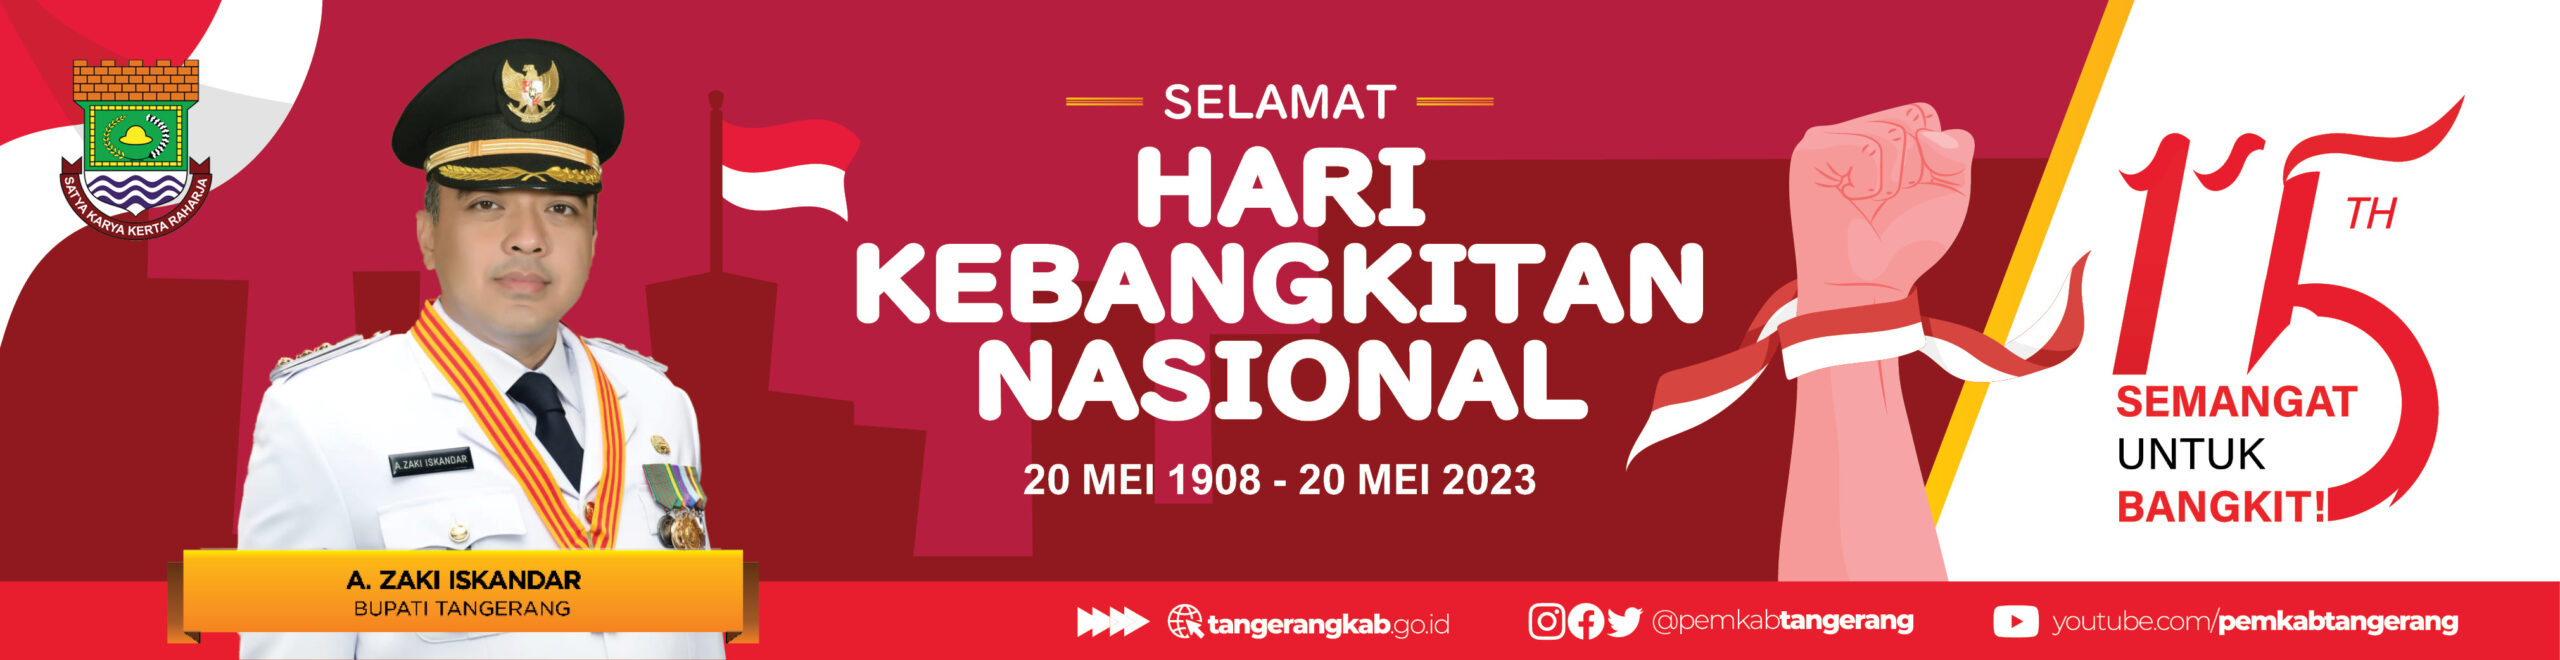 Bupati Tangerang Ucapan Hari Kebangkitan Nasional Tahun 2023